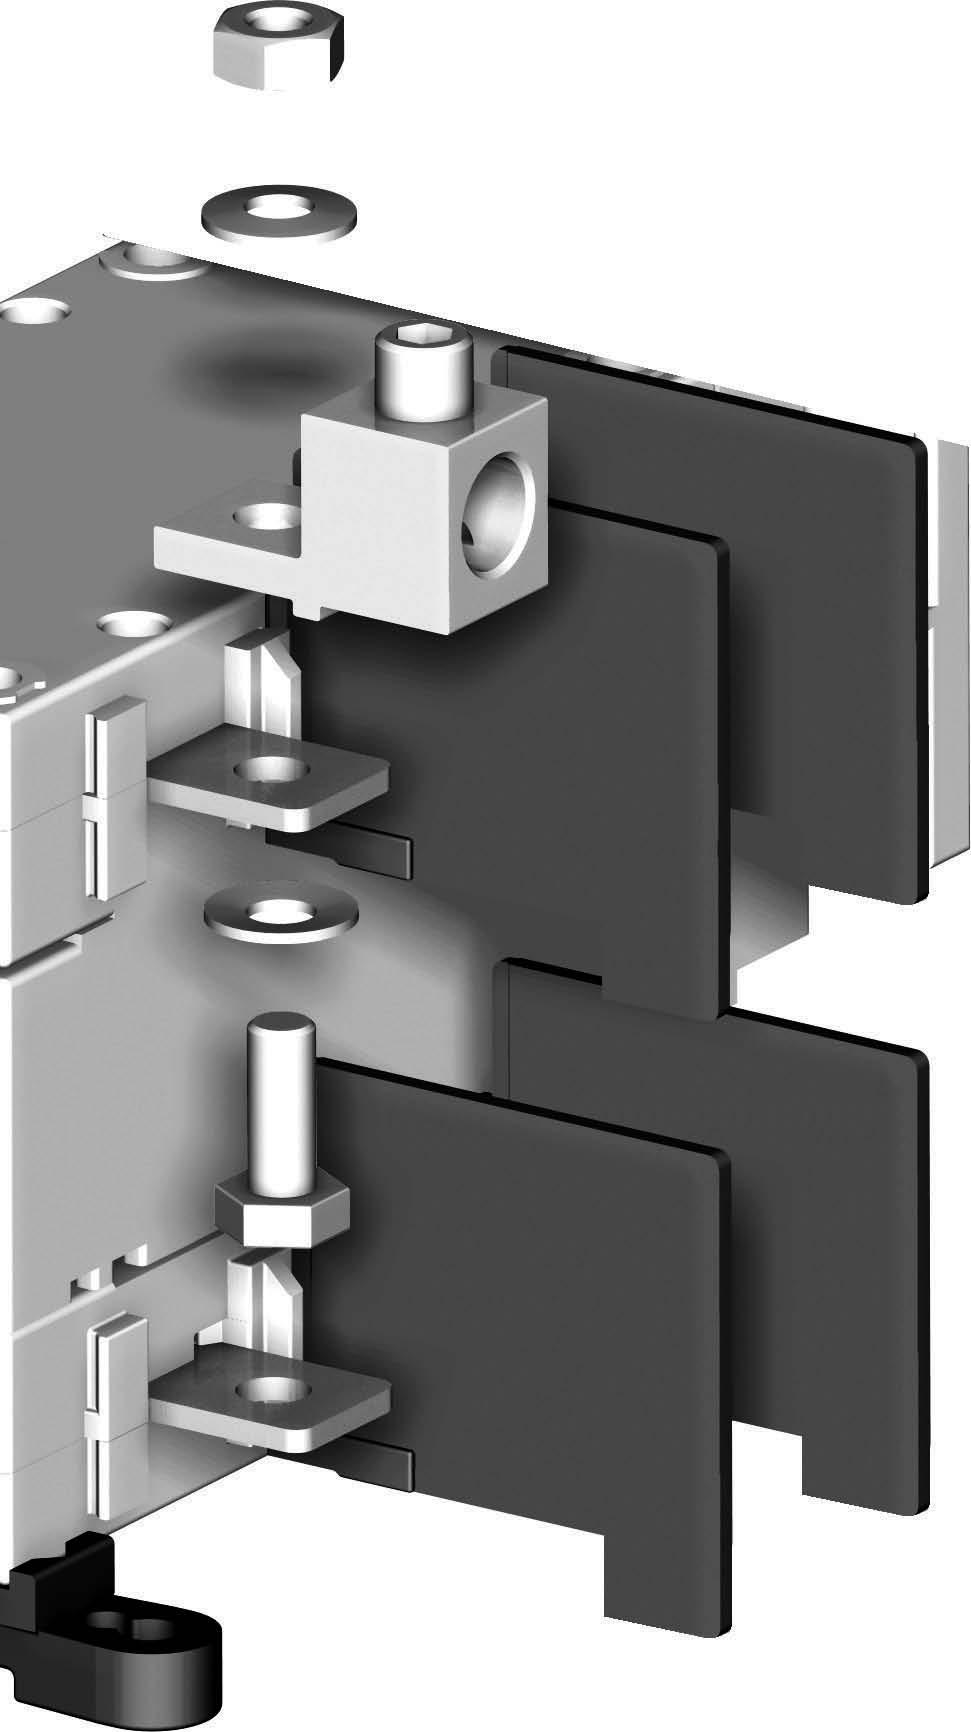 Mounting orientation Sens de montage Sentido de montaje Connection with LUGS (UL application) Raccordement avec bornes à cage (application UL) Conexión con bornes (aplicación UL) Lugs Bornes à